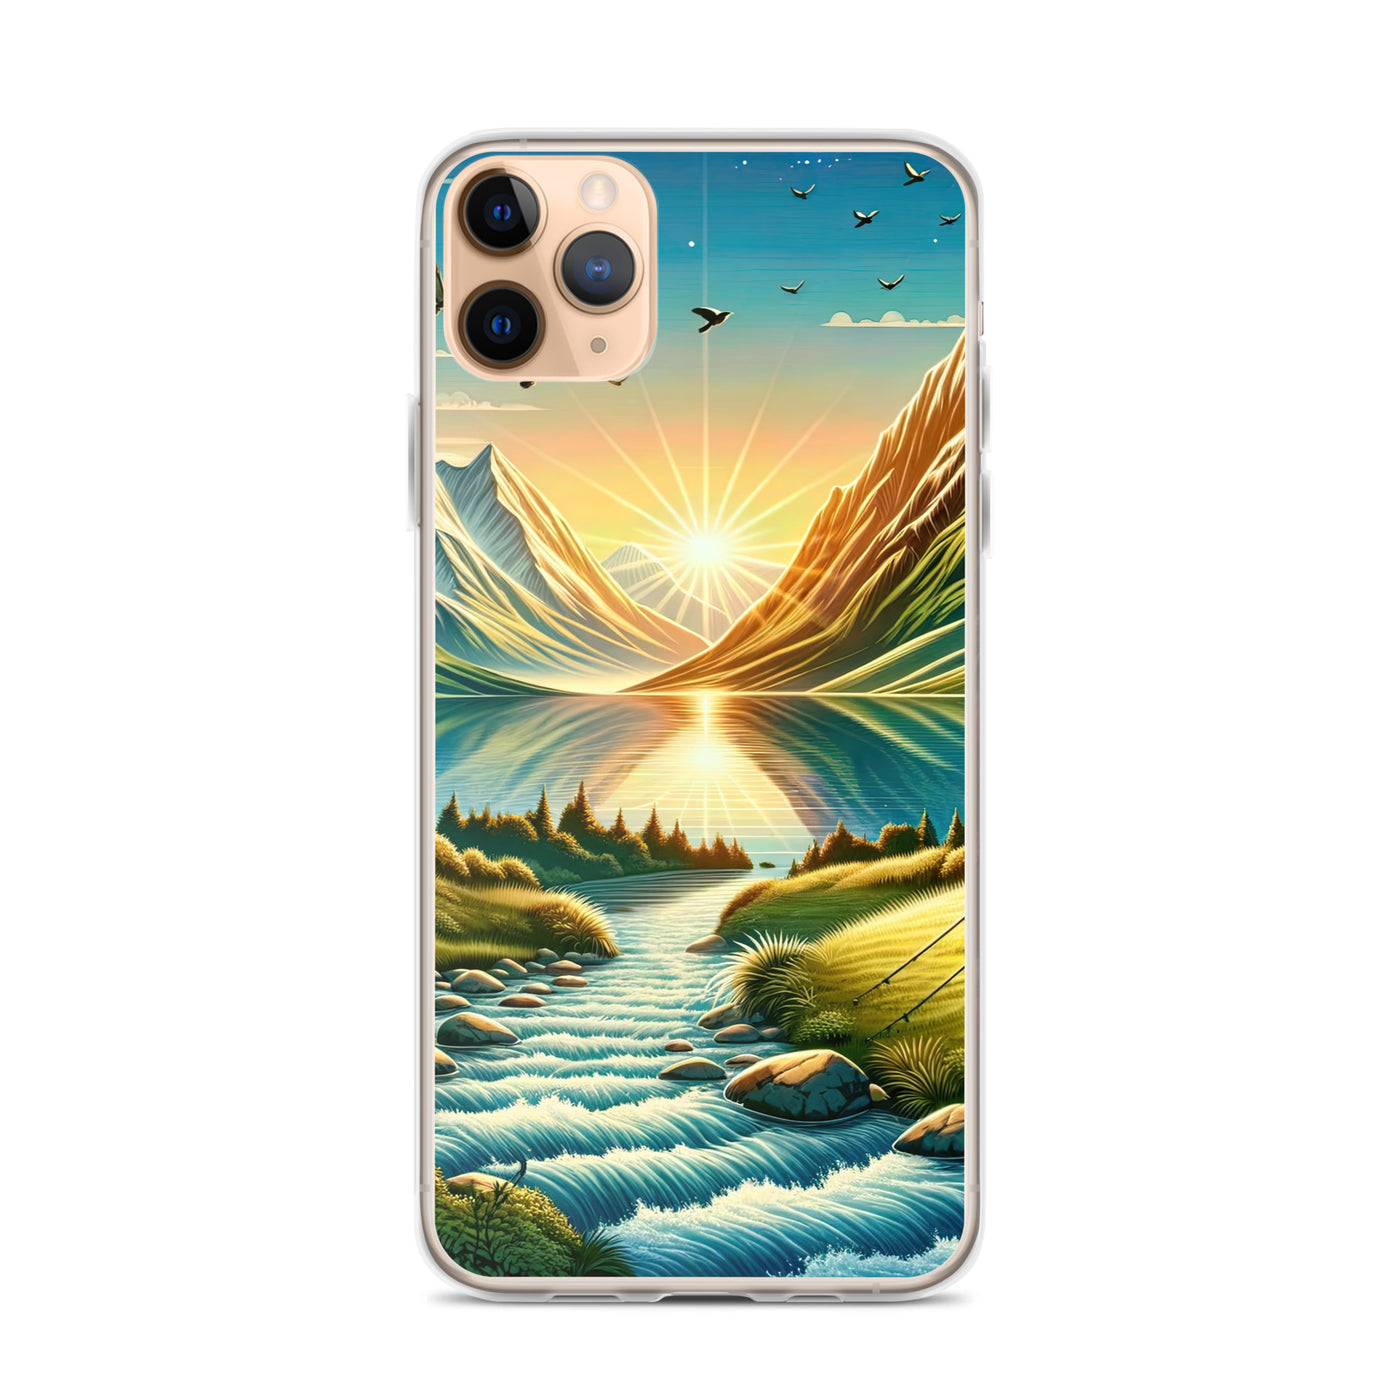 Zelt im Alpenmorgen mit goldenem Licht, Schneebergen und unberührten Seen - iPhone Schutzhülle (durchsichtig) berge xxx yyy zzz iPhone 11 Pro Max